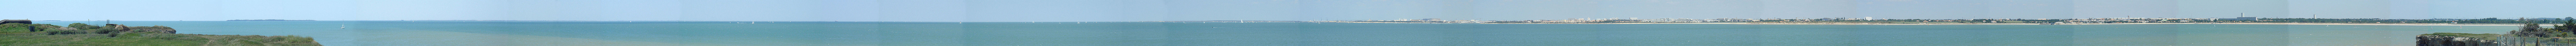 Панорама пролива Антиош. Слева направо: Fouras, Fort Enet, Ile d'Aix, Fort Boyard, Ile d'Oléron, Ile de Ré, La Rochelle, Aytré.